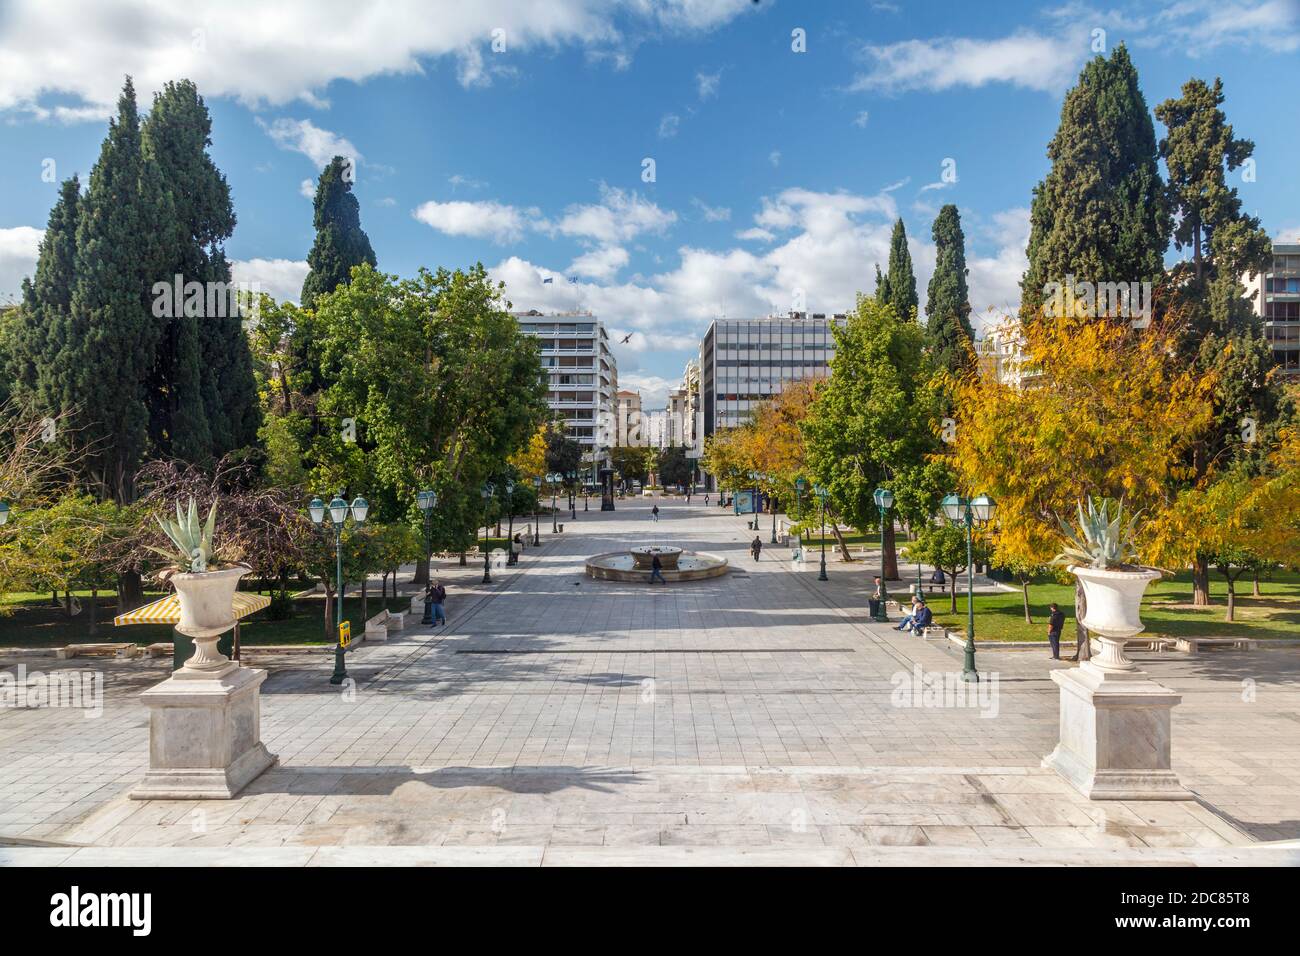 Place Syntagma à Athènes, un endroit habituellement plein de personnes, maintenant presque vide en raison des restrictions de circulation pendant le deuxième confinement du coronavirus Banque D'Images